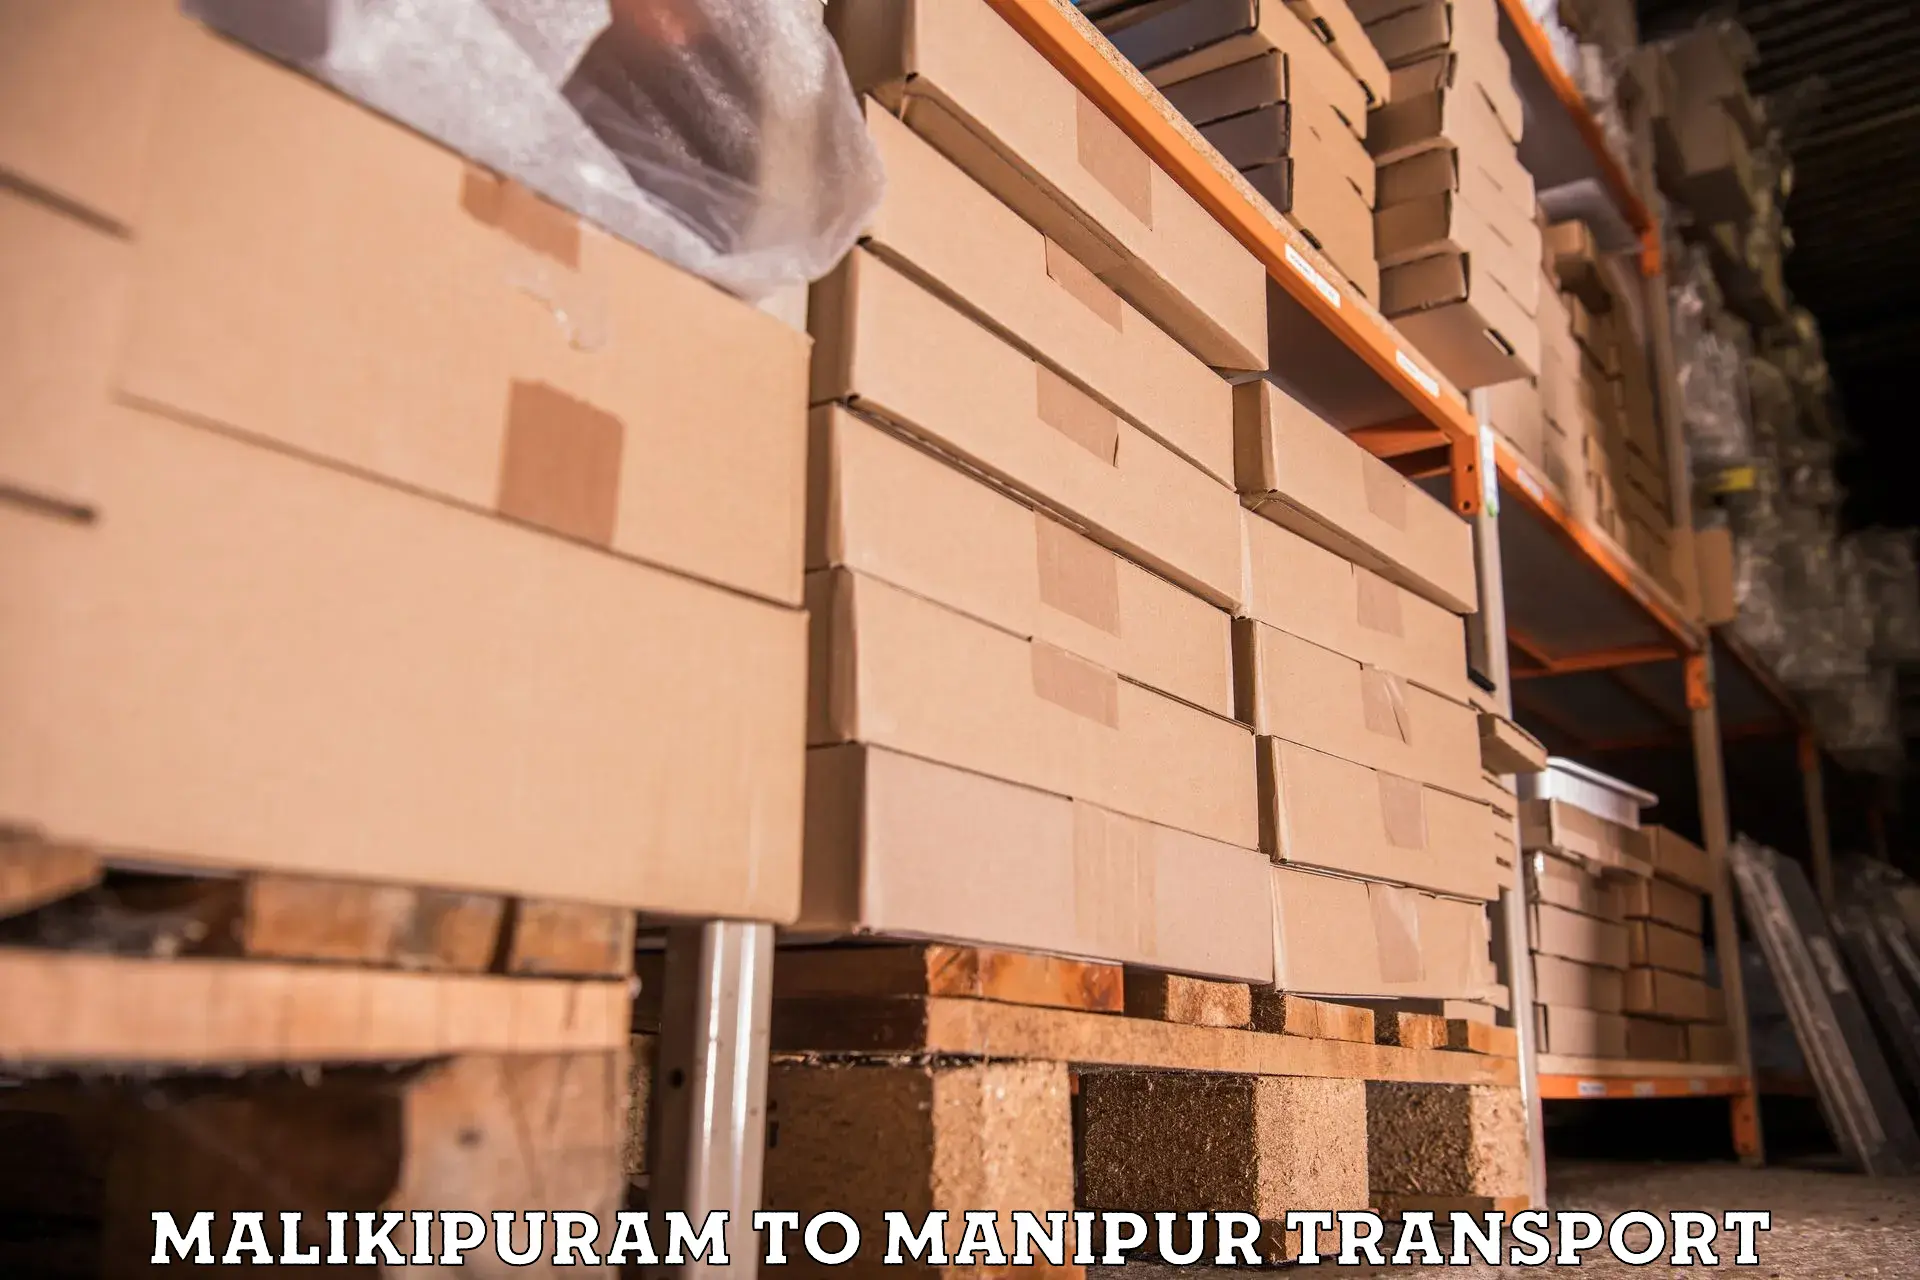 Transport services Malikipuram to Manipur